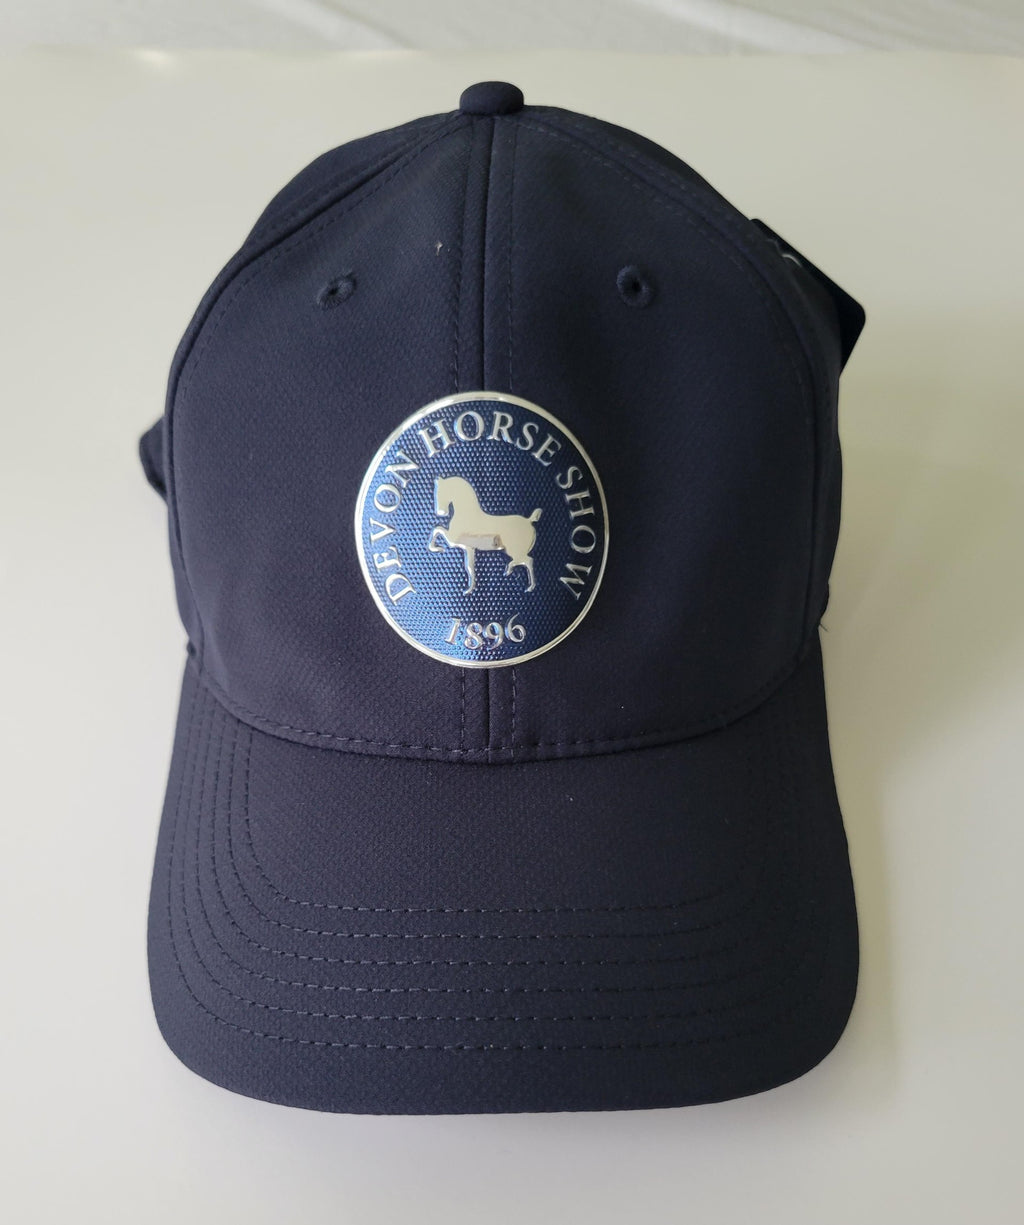 Devon Metallic Logo Tech Hat by Ahead